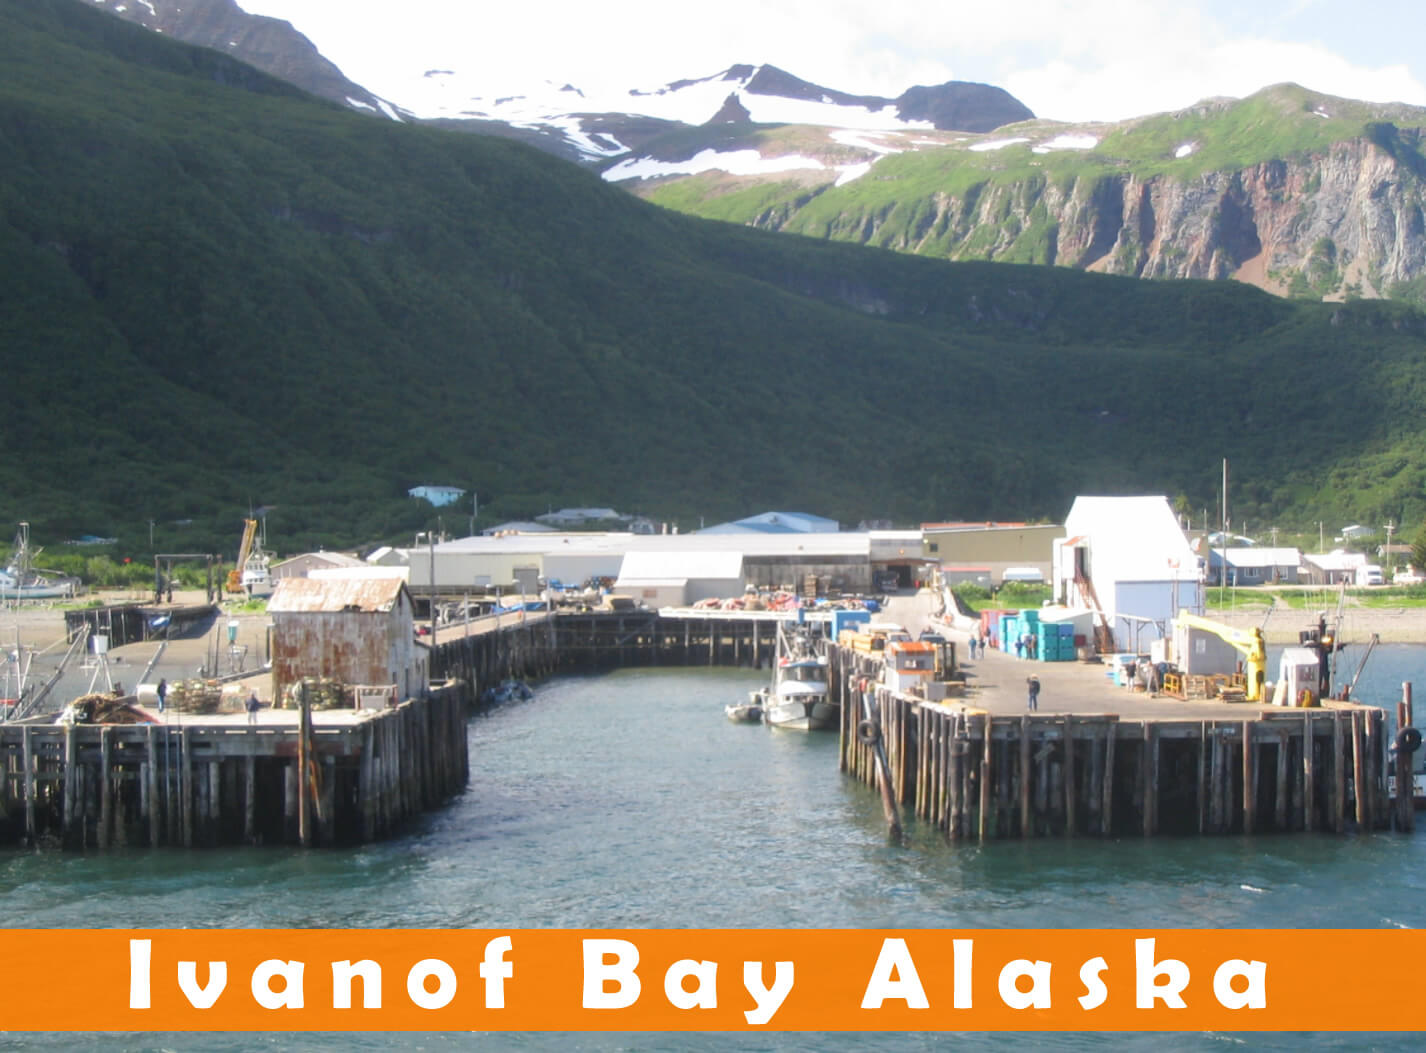 Ivanof Bay Alaska